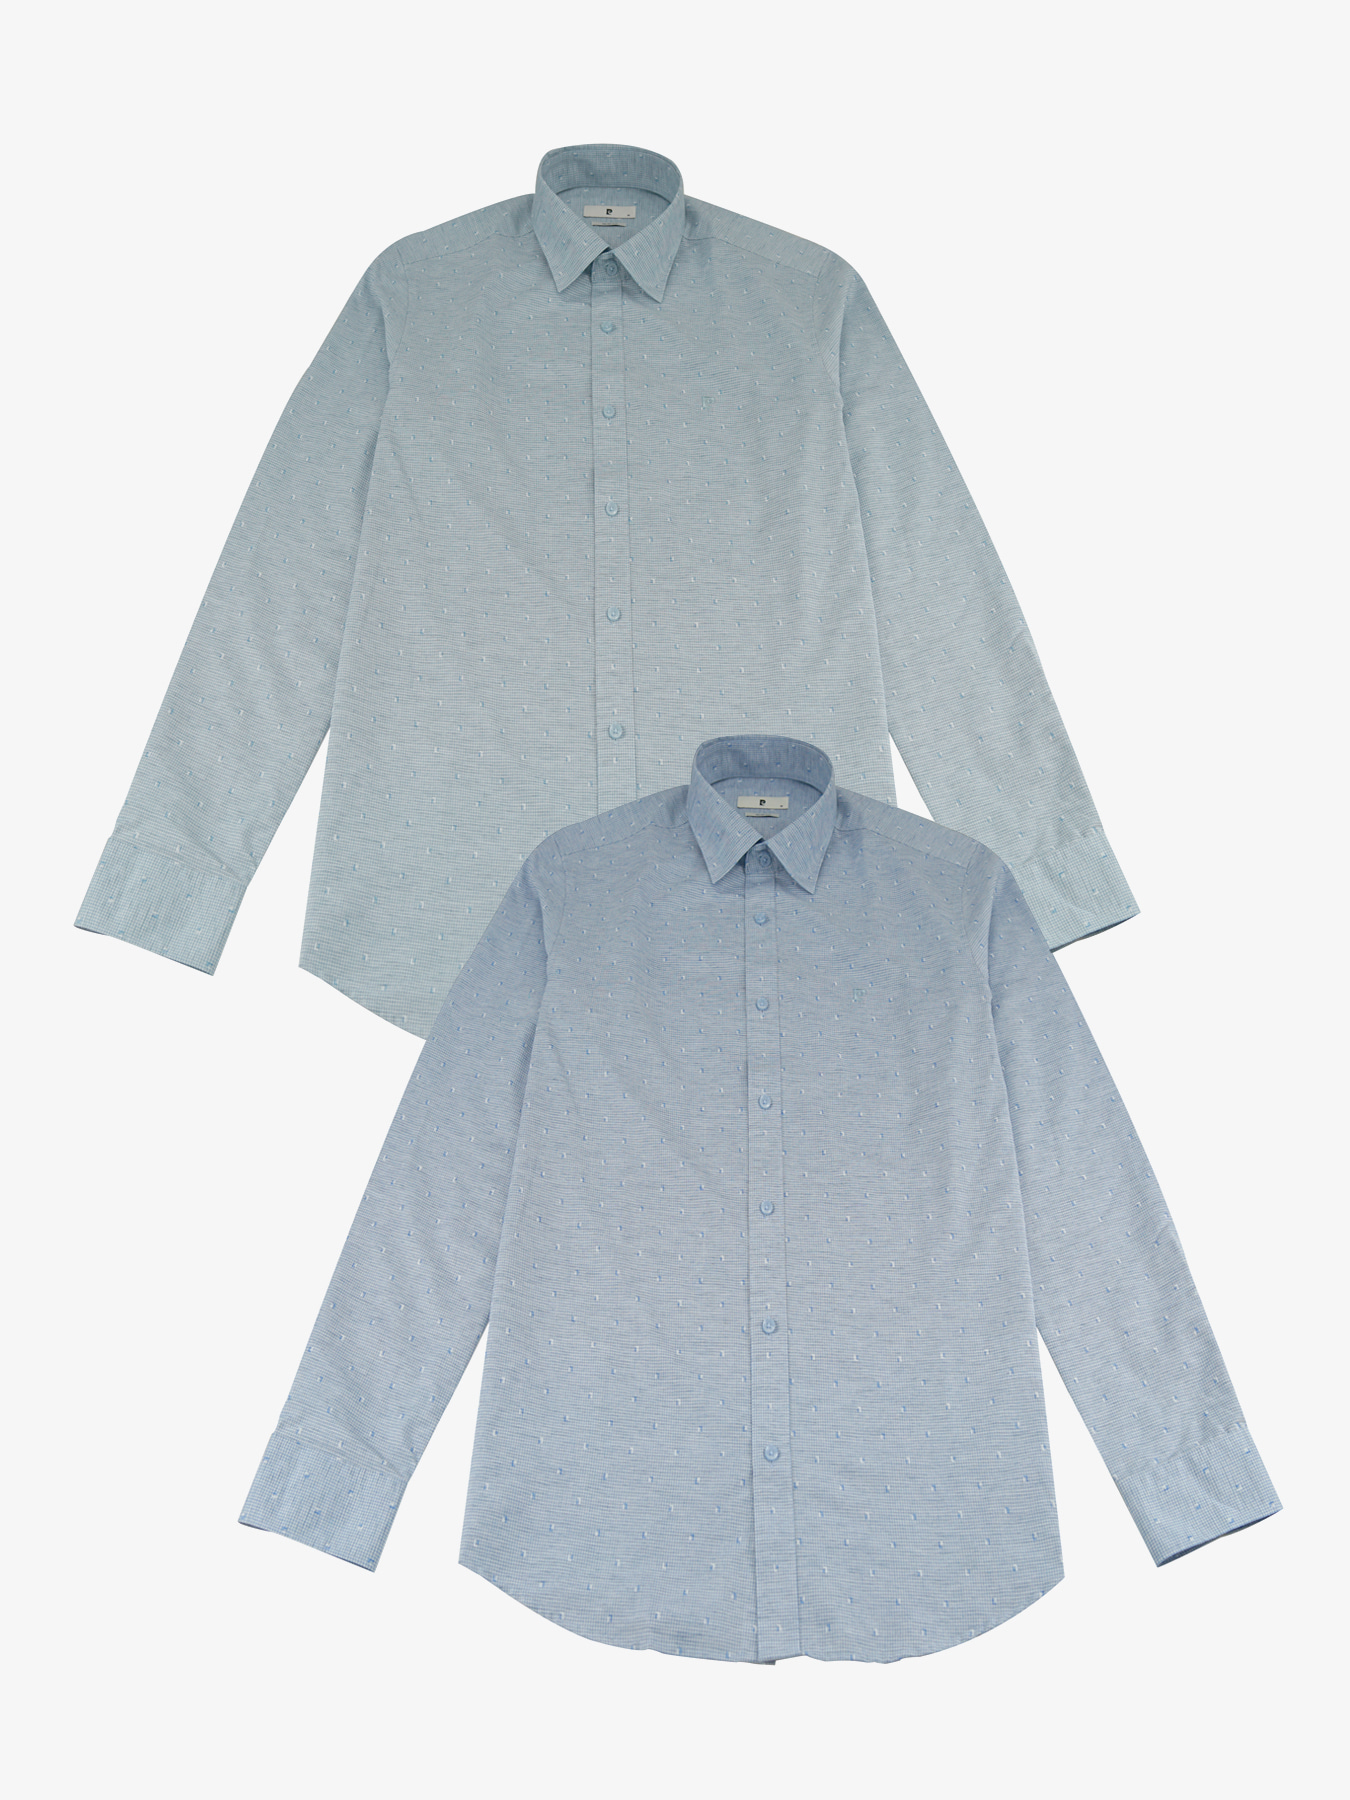 [피에르가르뎅] 올오버 패턴 슬림핏 긴팔 셔츠 PPWS1608